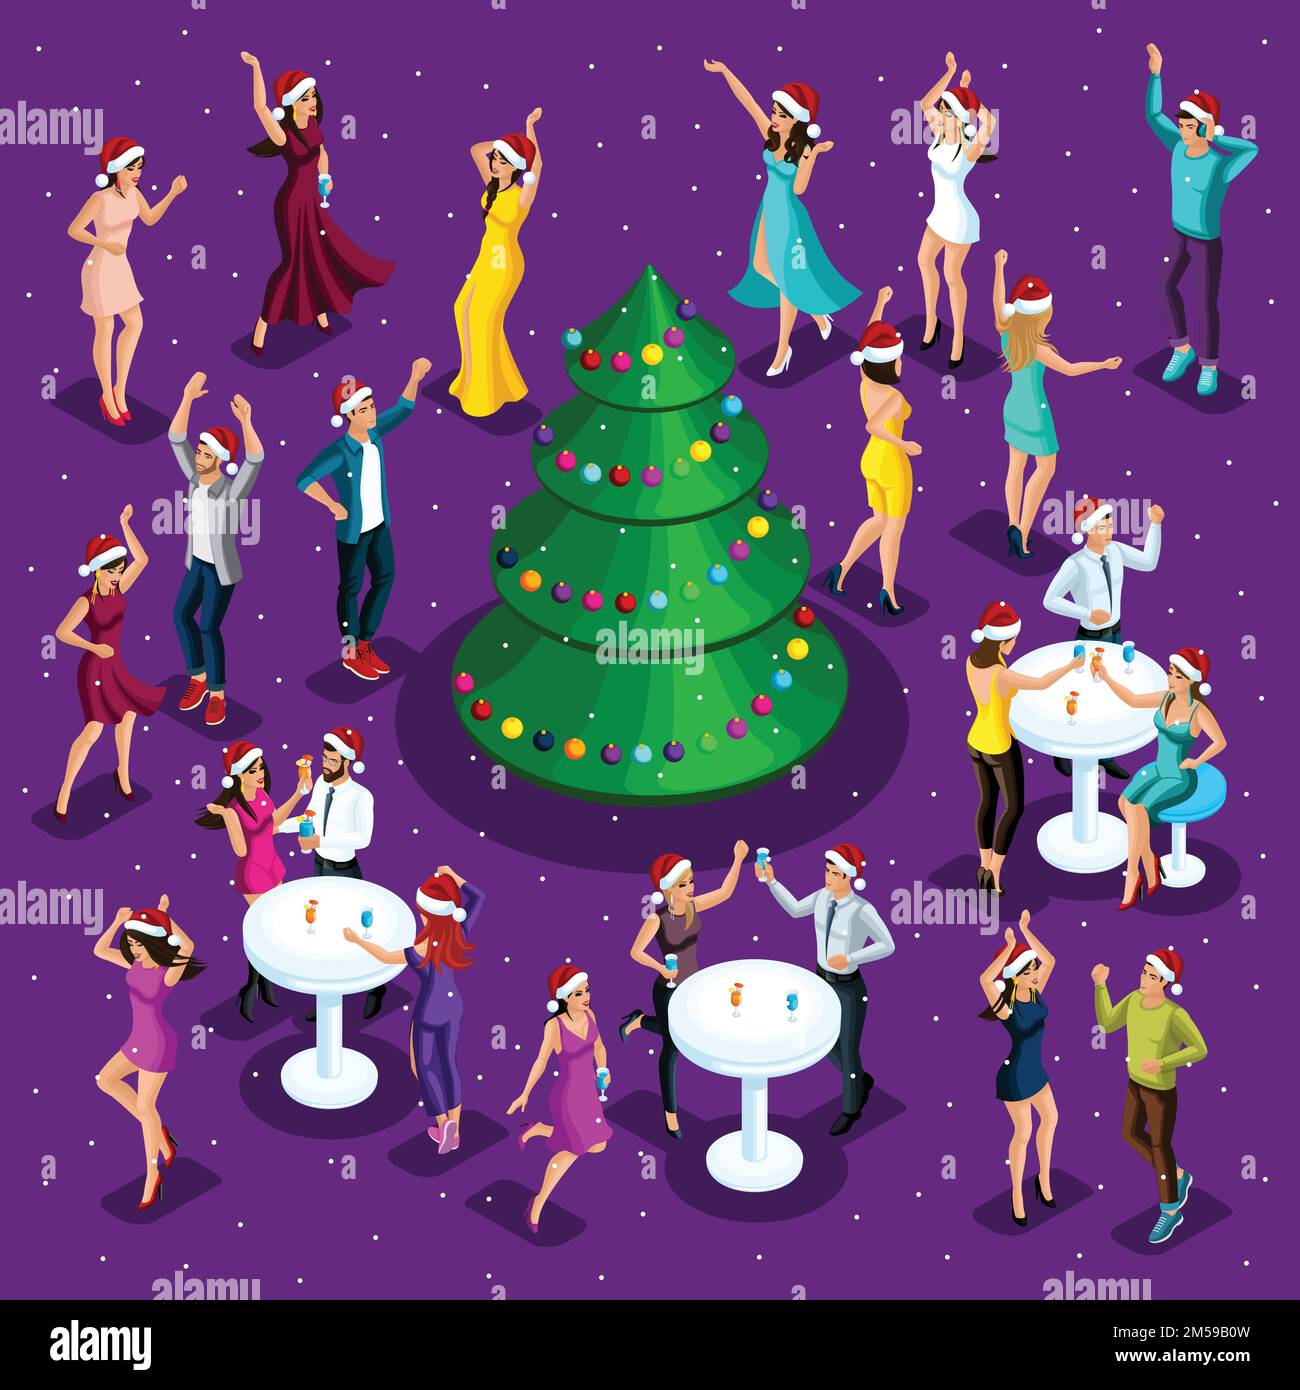 Festa isometrica di Natale, 3D danze, la felicità di un uomo e di una donna stanno avendo divertimento, albero di Natale di festa nel centro, festa aziendale, Illustrazione Vettoriale